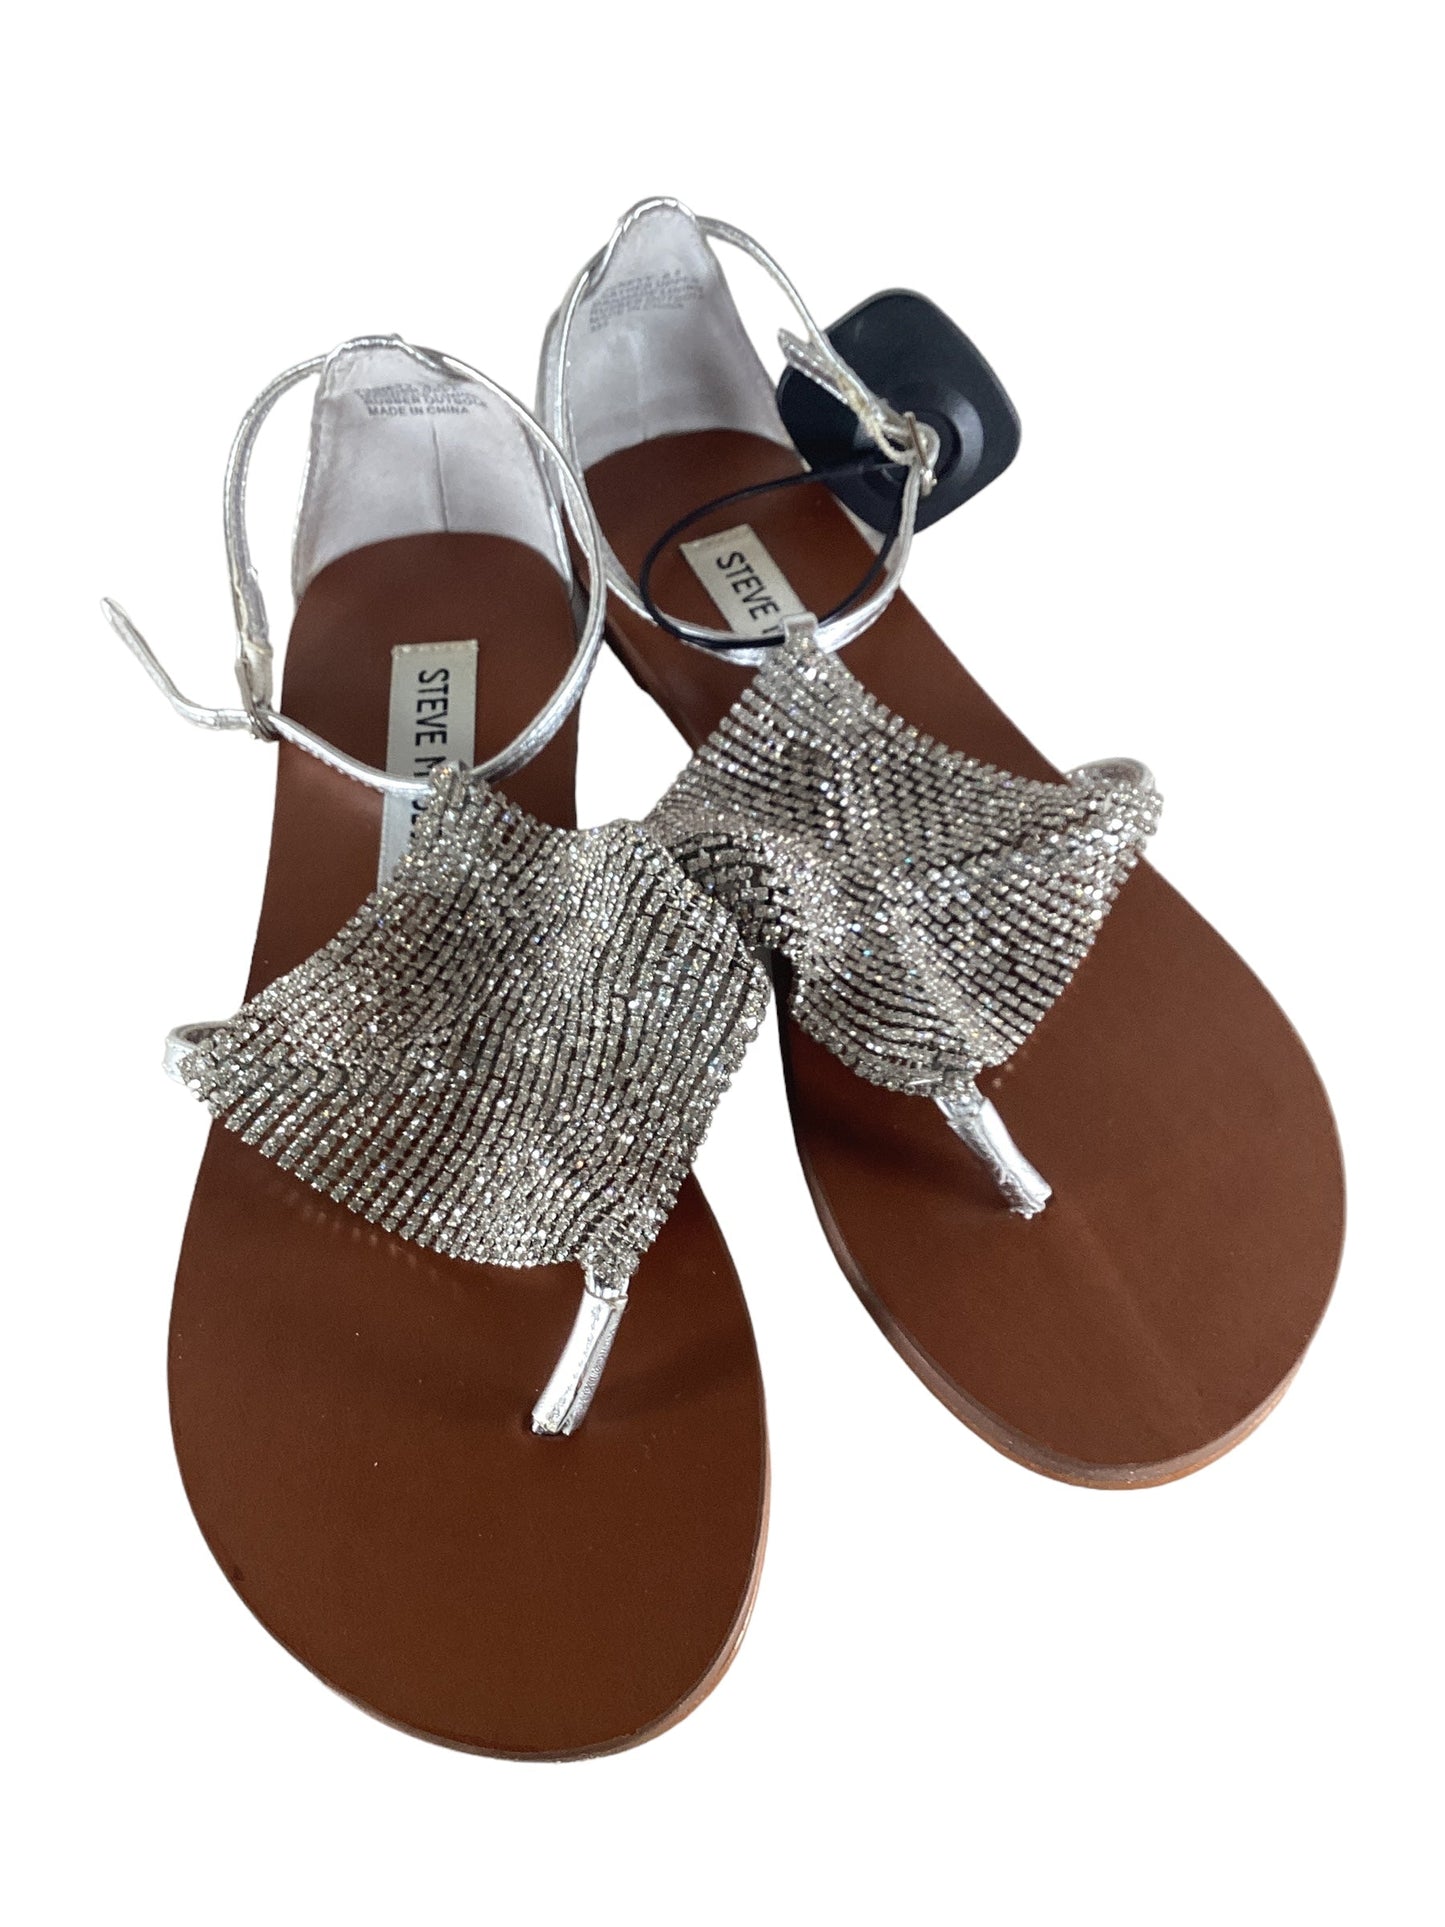 Silver Sandals Flats Steve Madden, Size 6.5